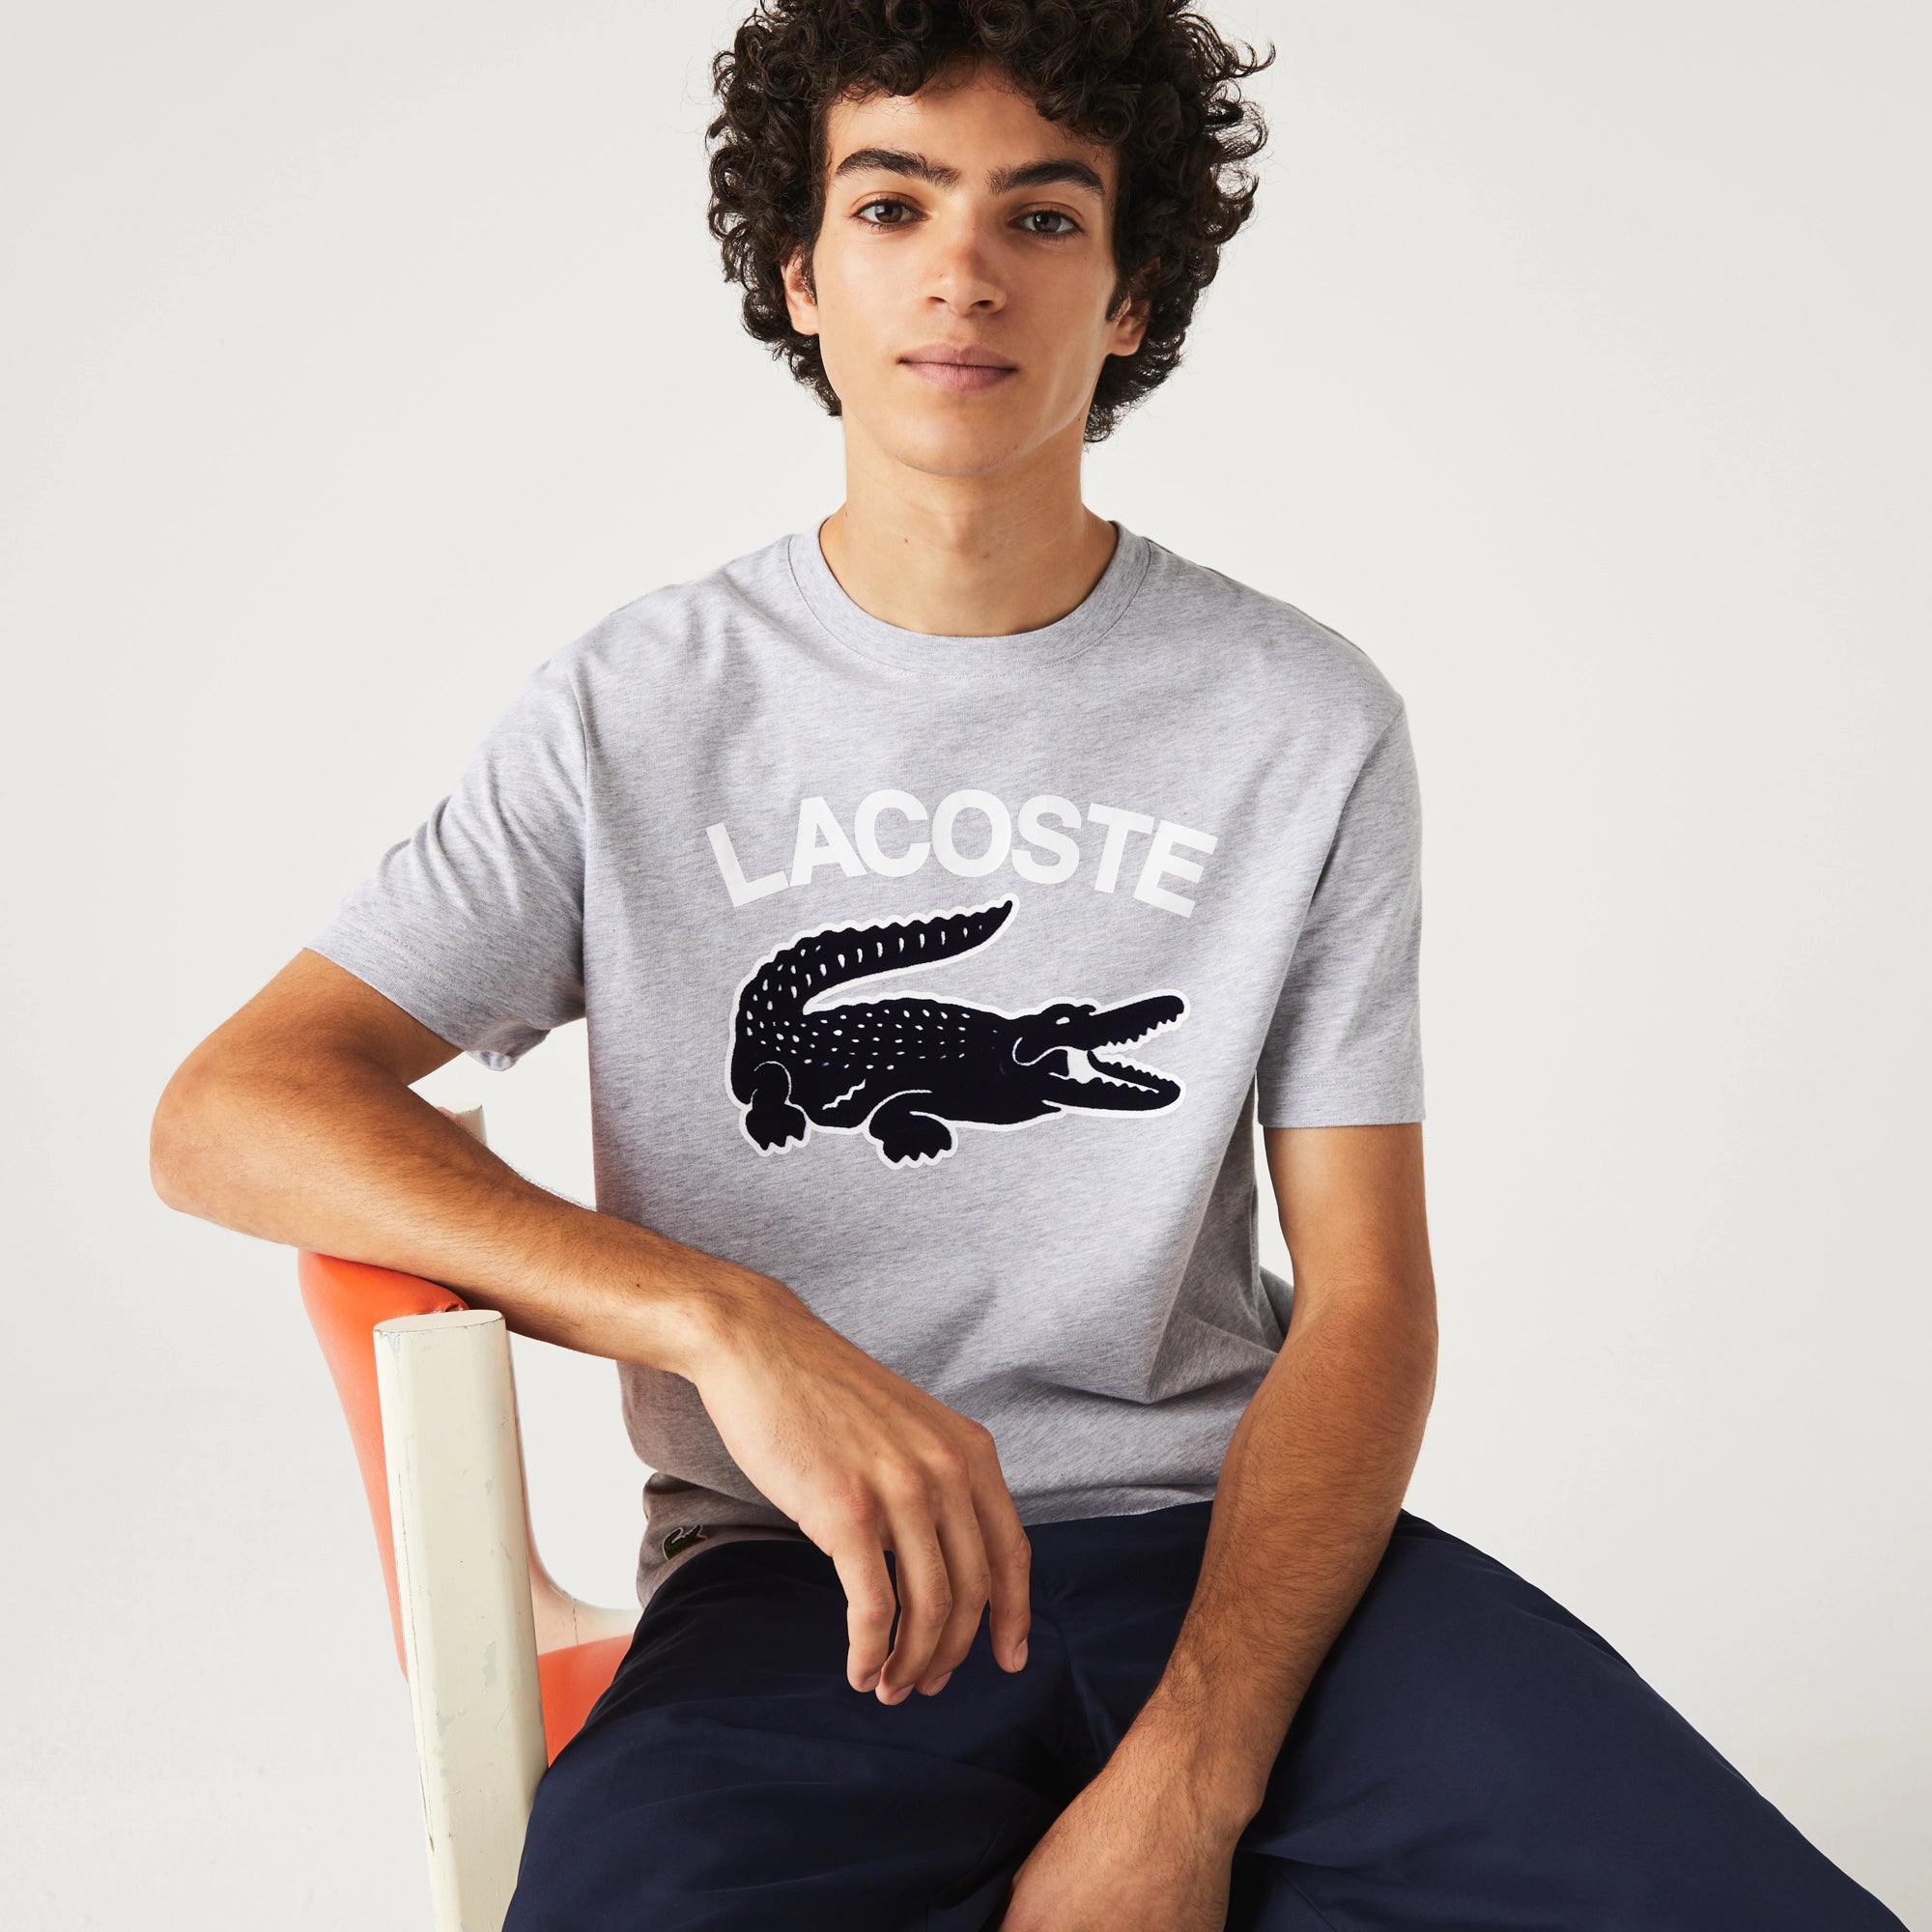 Lacoste Graphic Big Croc T-Shirt